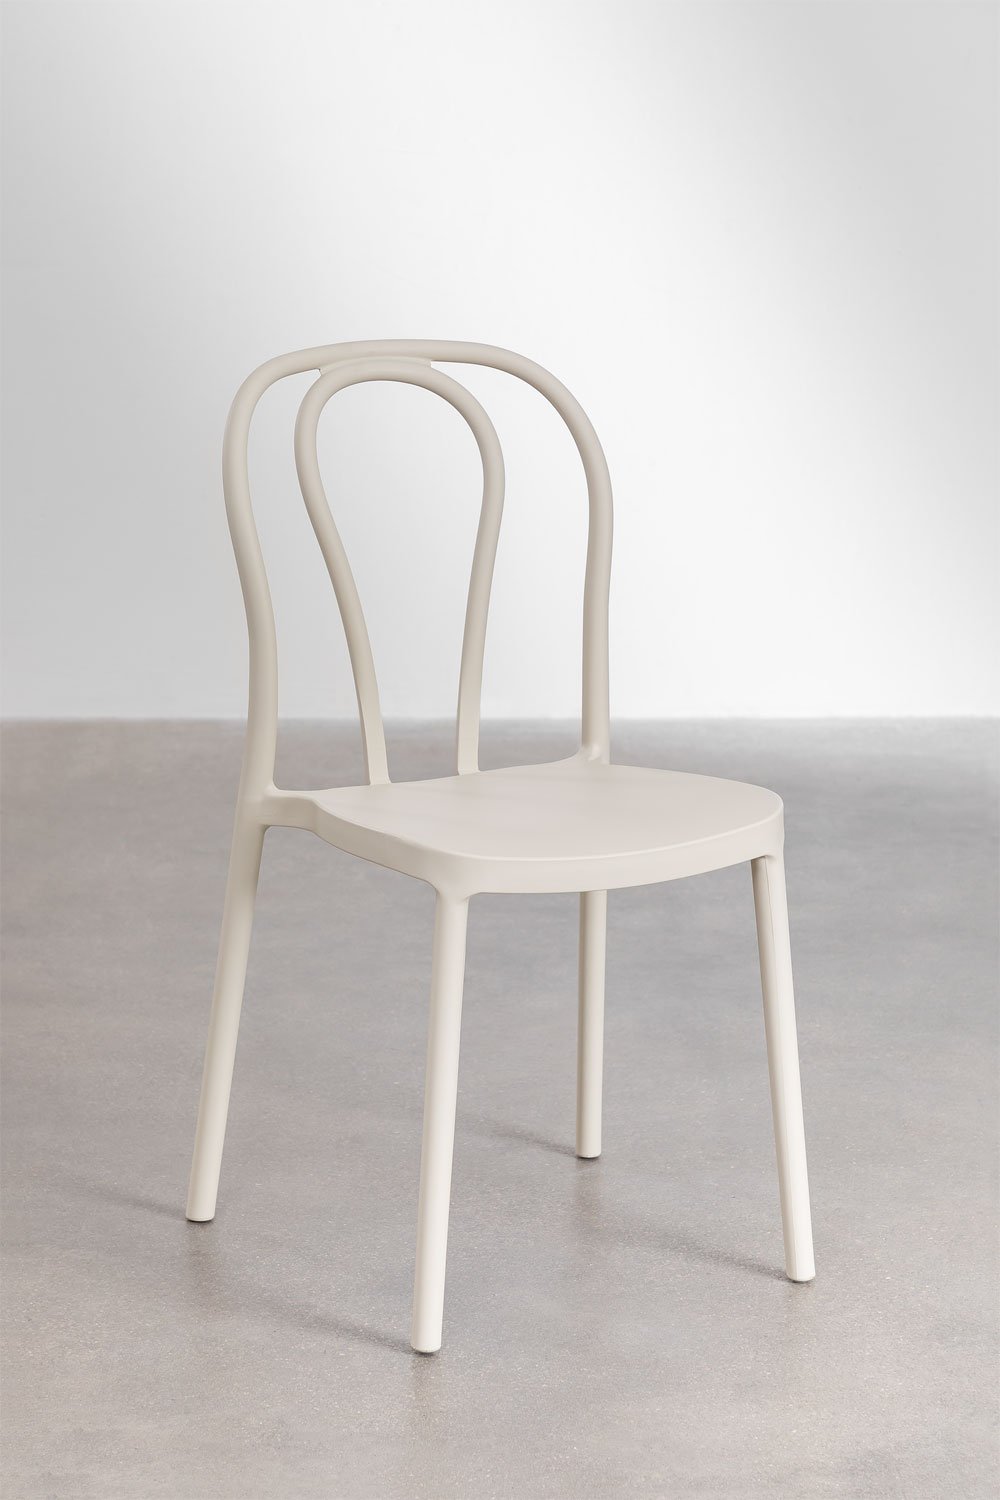 Confezione da 2 sedie da pranzo impilabili Mizzi, immagine della galleria 1